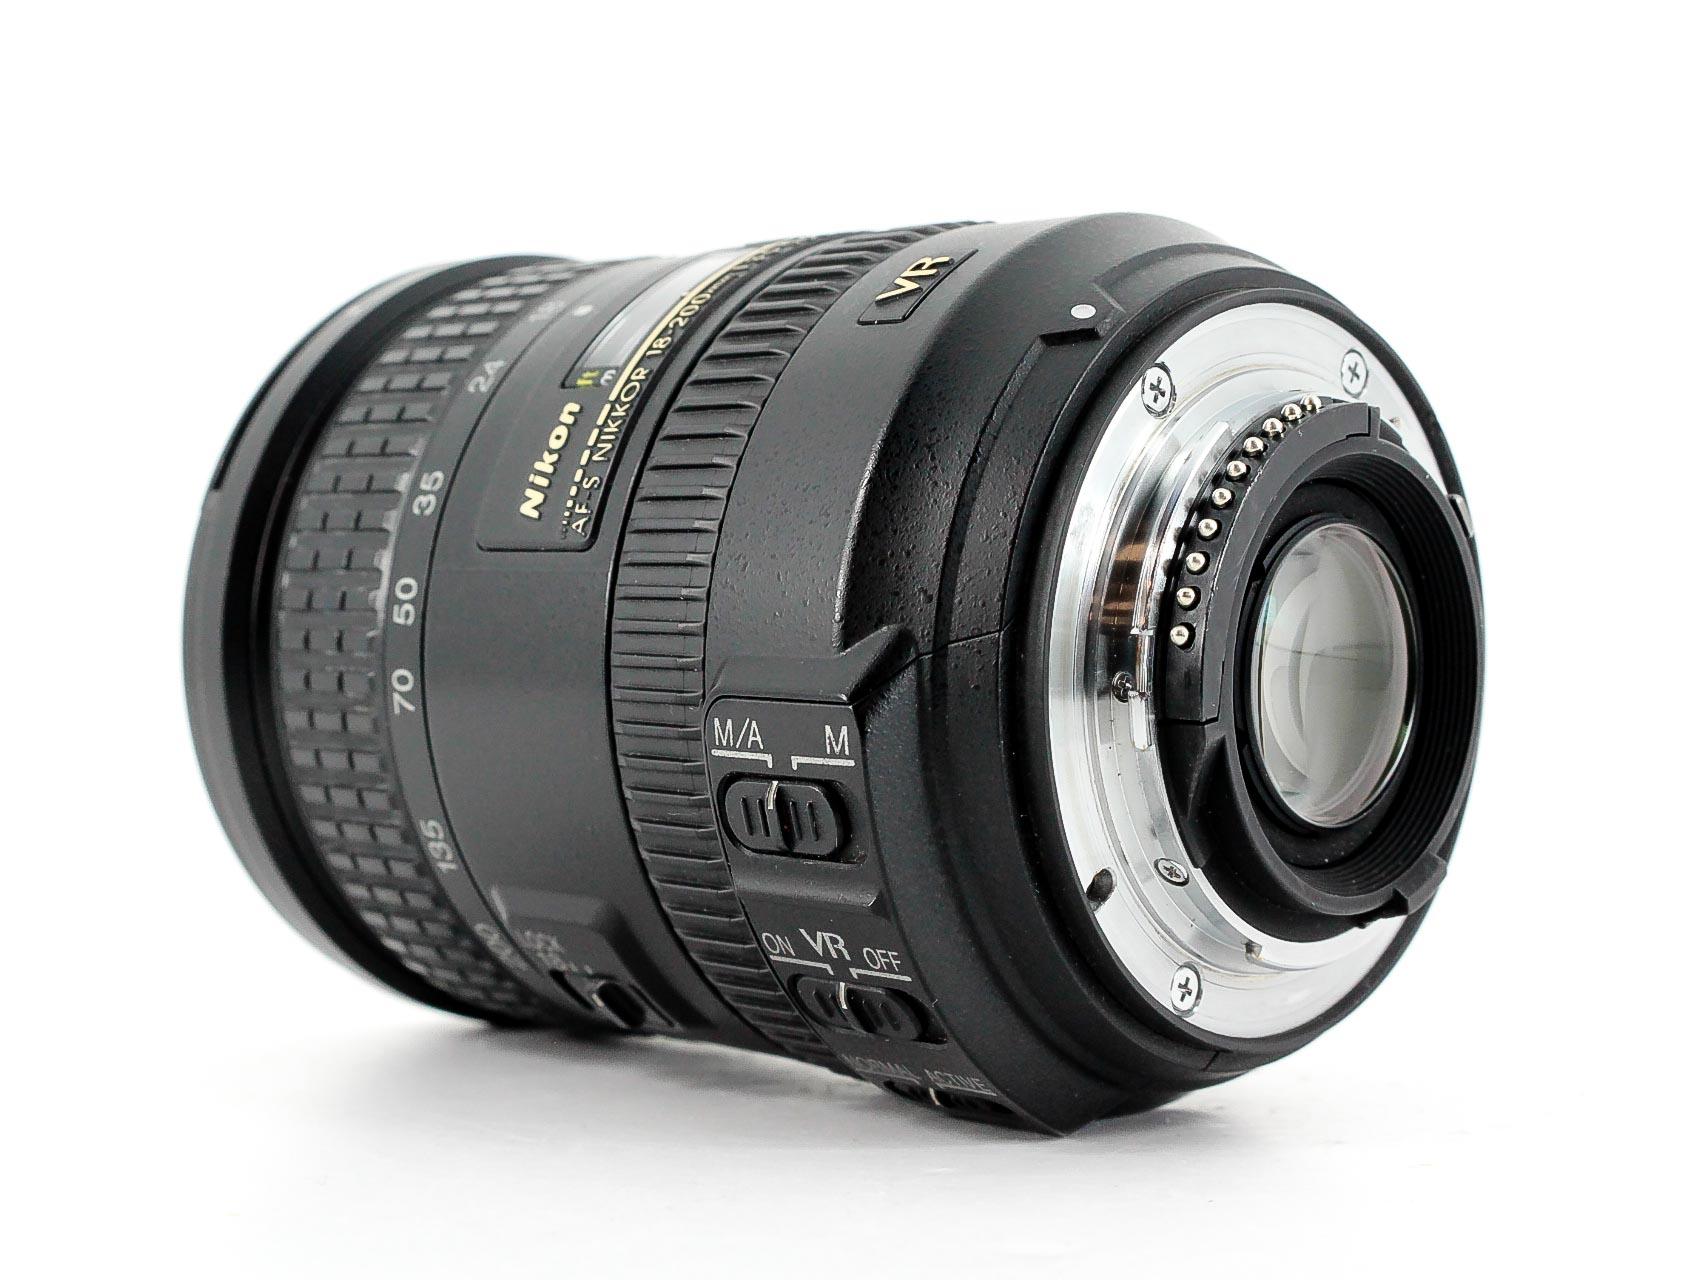 Nikon AF-S DX Nikkor 18-200mm f/3.5-5.6G ED VR II Lens - Lenses and Cameras